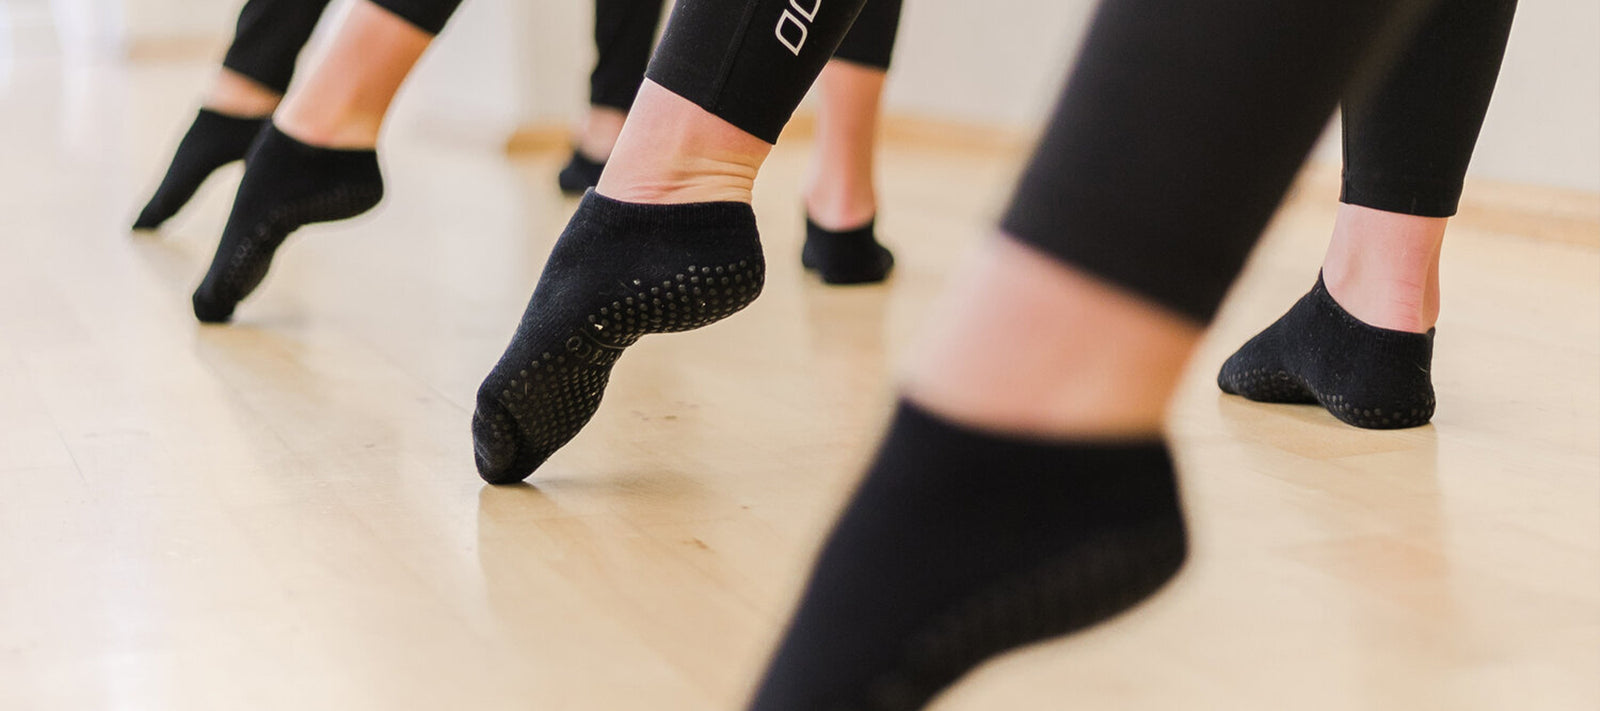 Non Slip Half Toe Half Toe Yoga Socks For Women Perfect For Ballet